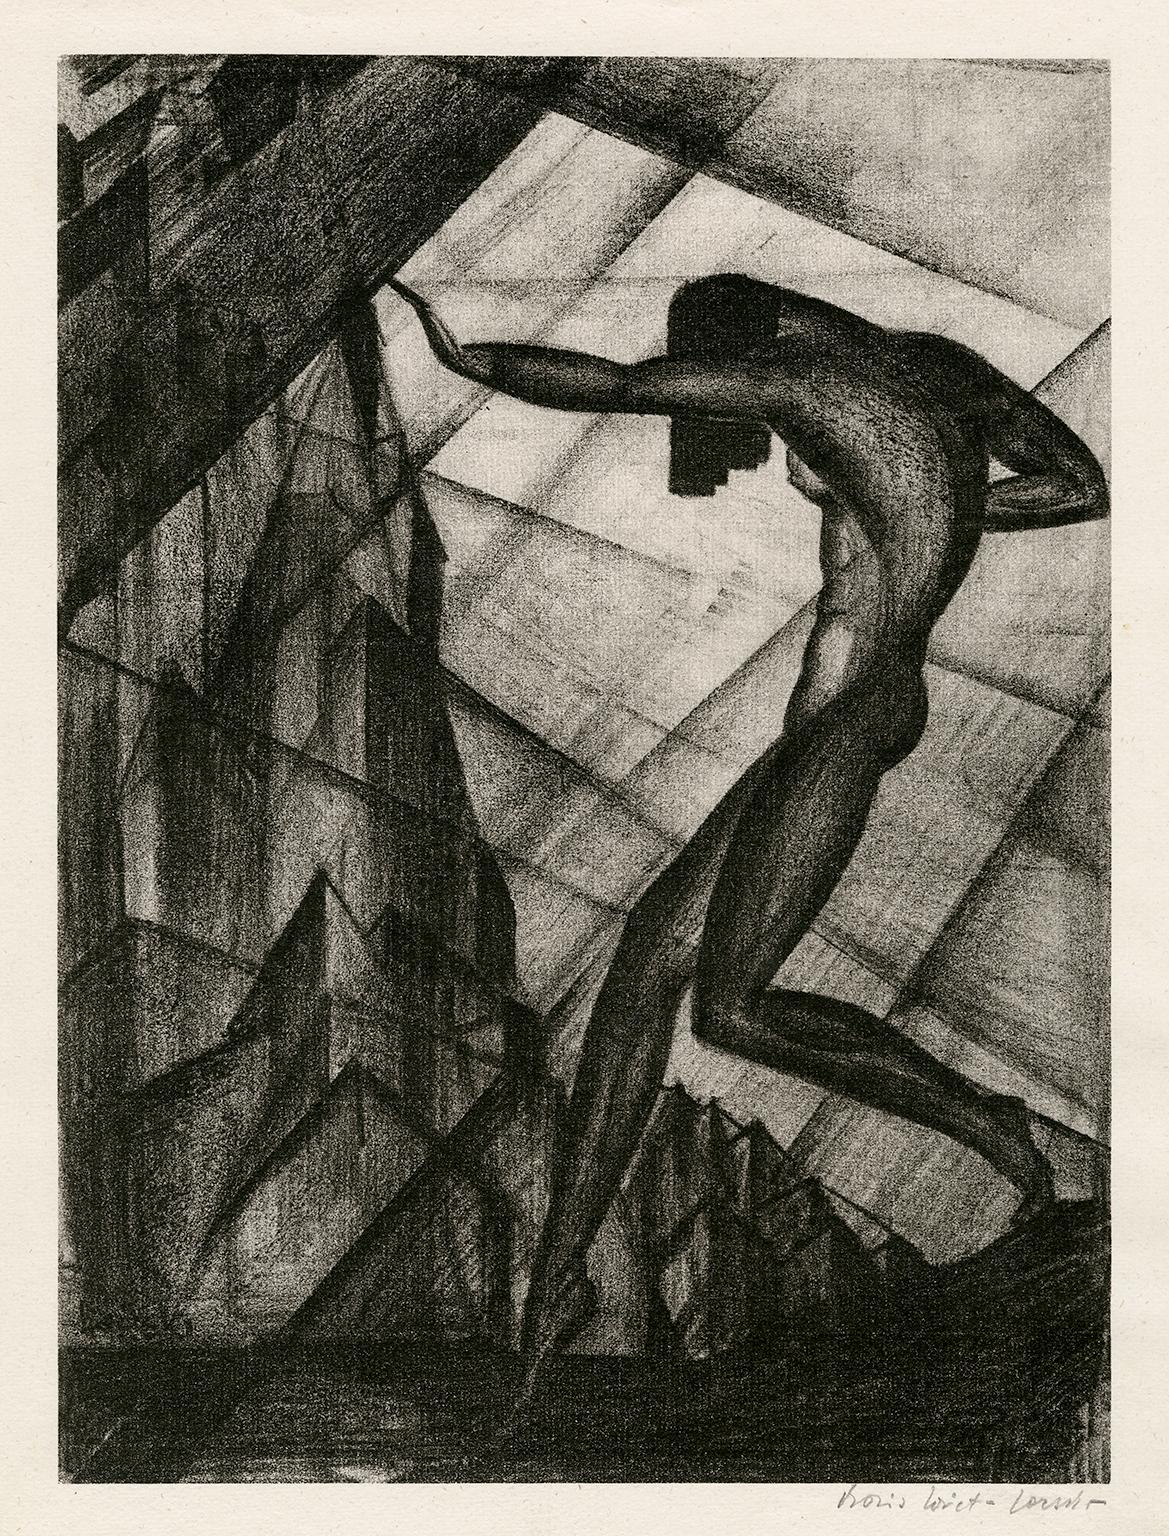 Boris Lovet-Lorski Nude Print – Nackte Tänzerin - Modernismus der 1920er Jahre